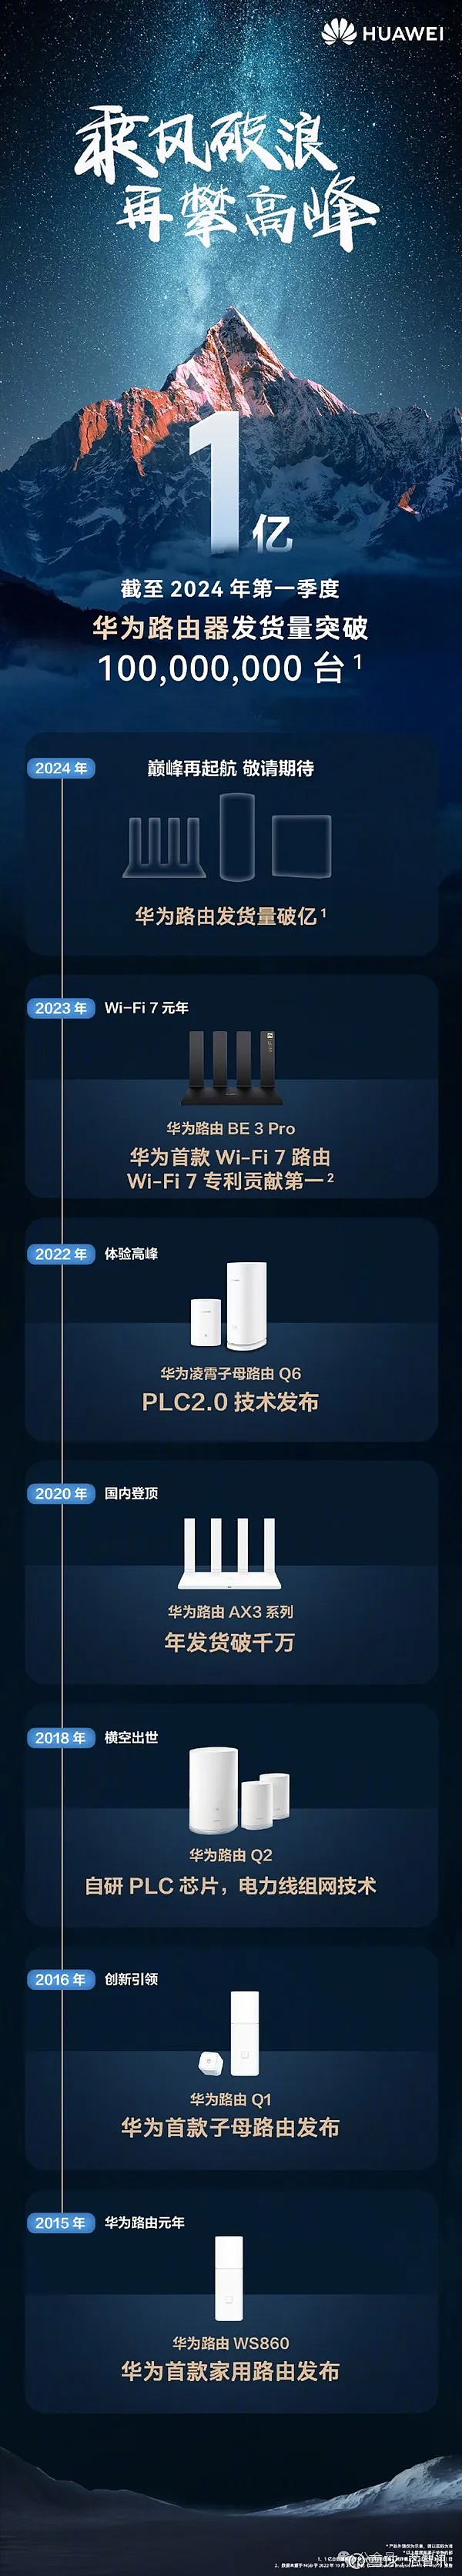 今年3月份时候,华为还展示了wifi 7星闪路由器方案,其搭载海思凌霄790